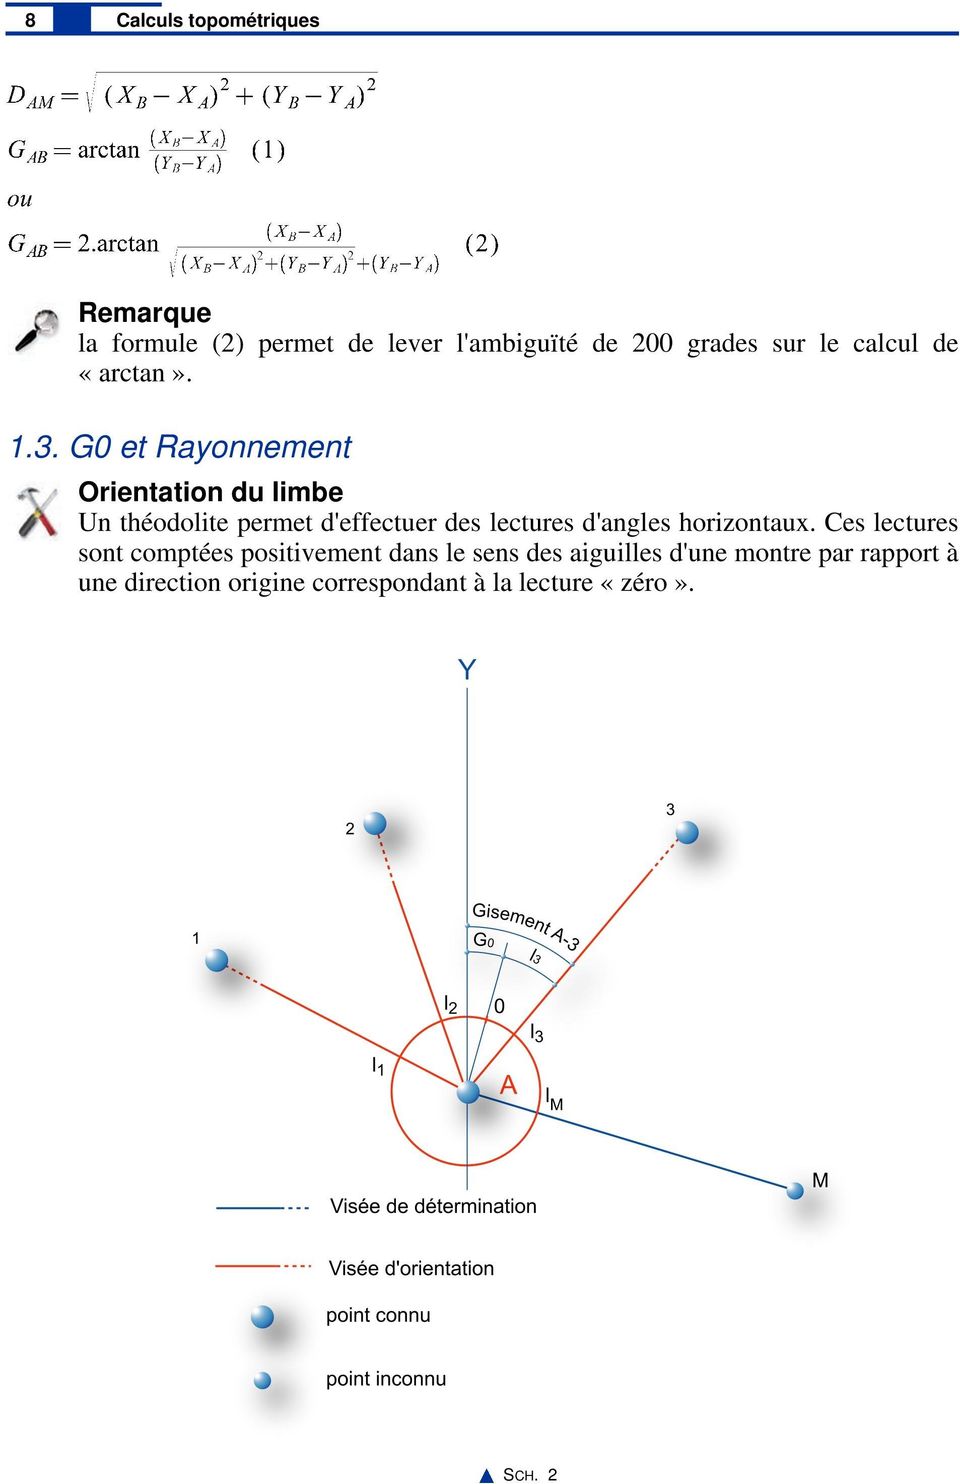 Calculs topométriques - PDF Téléchargement Gratuit